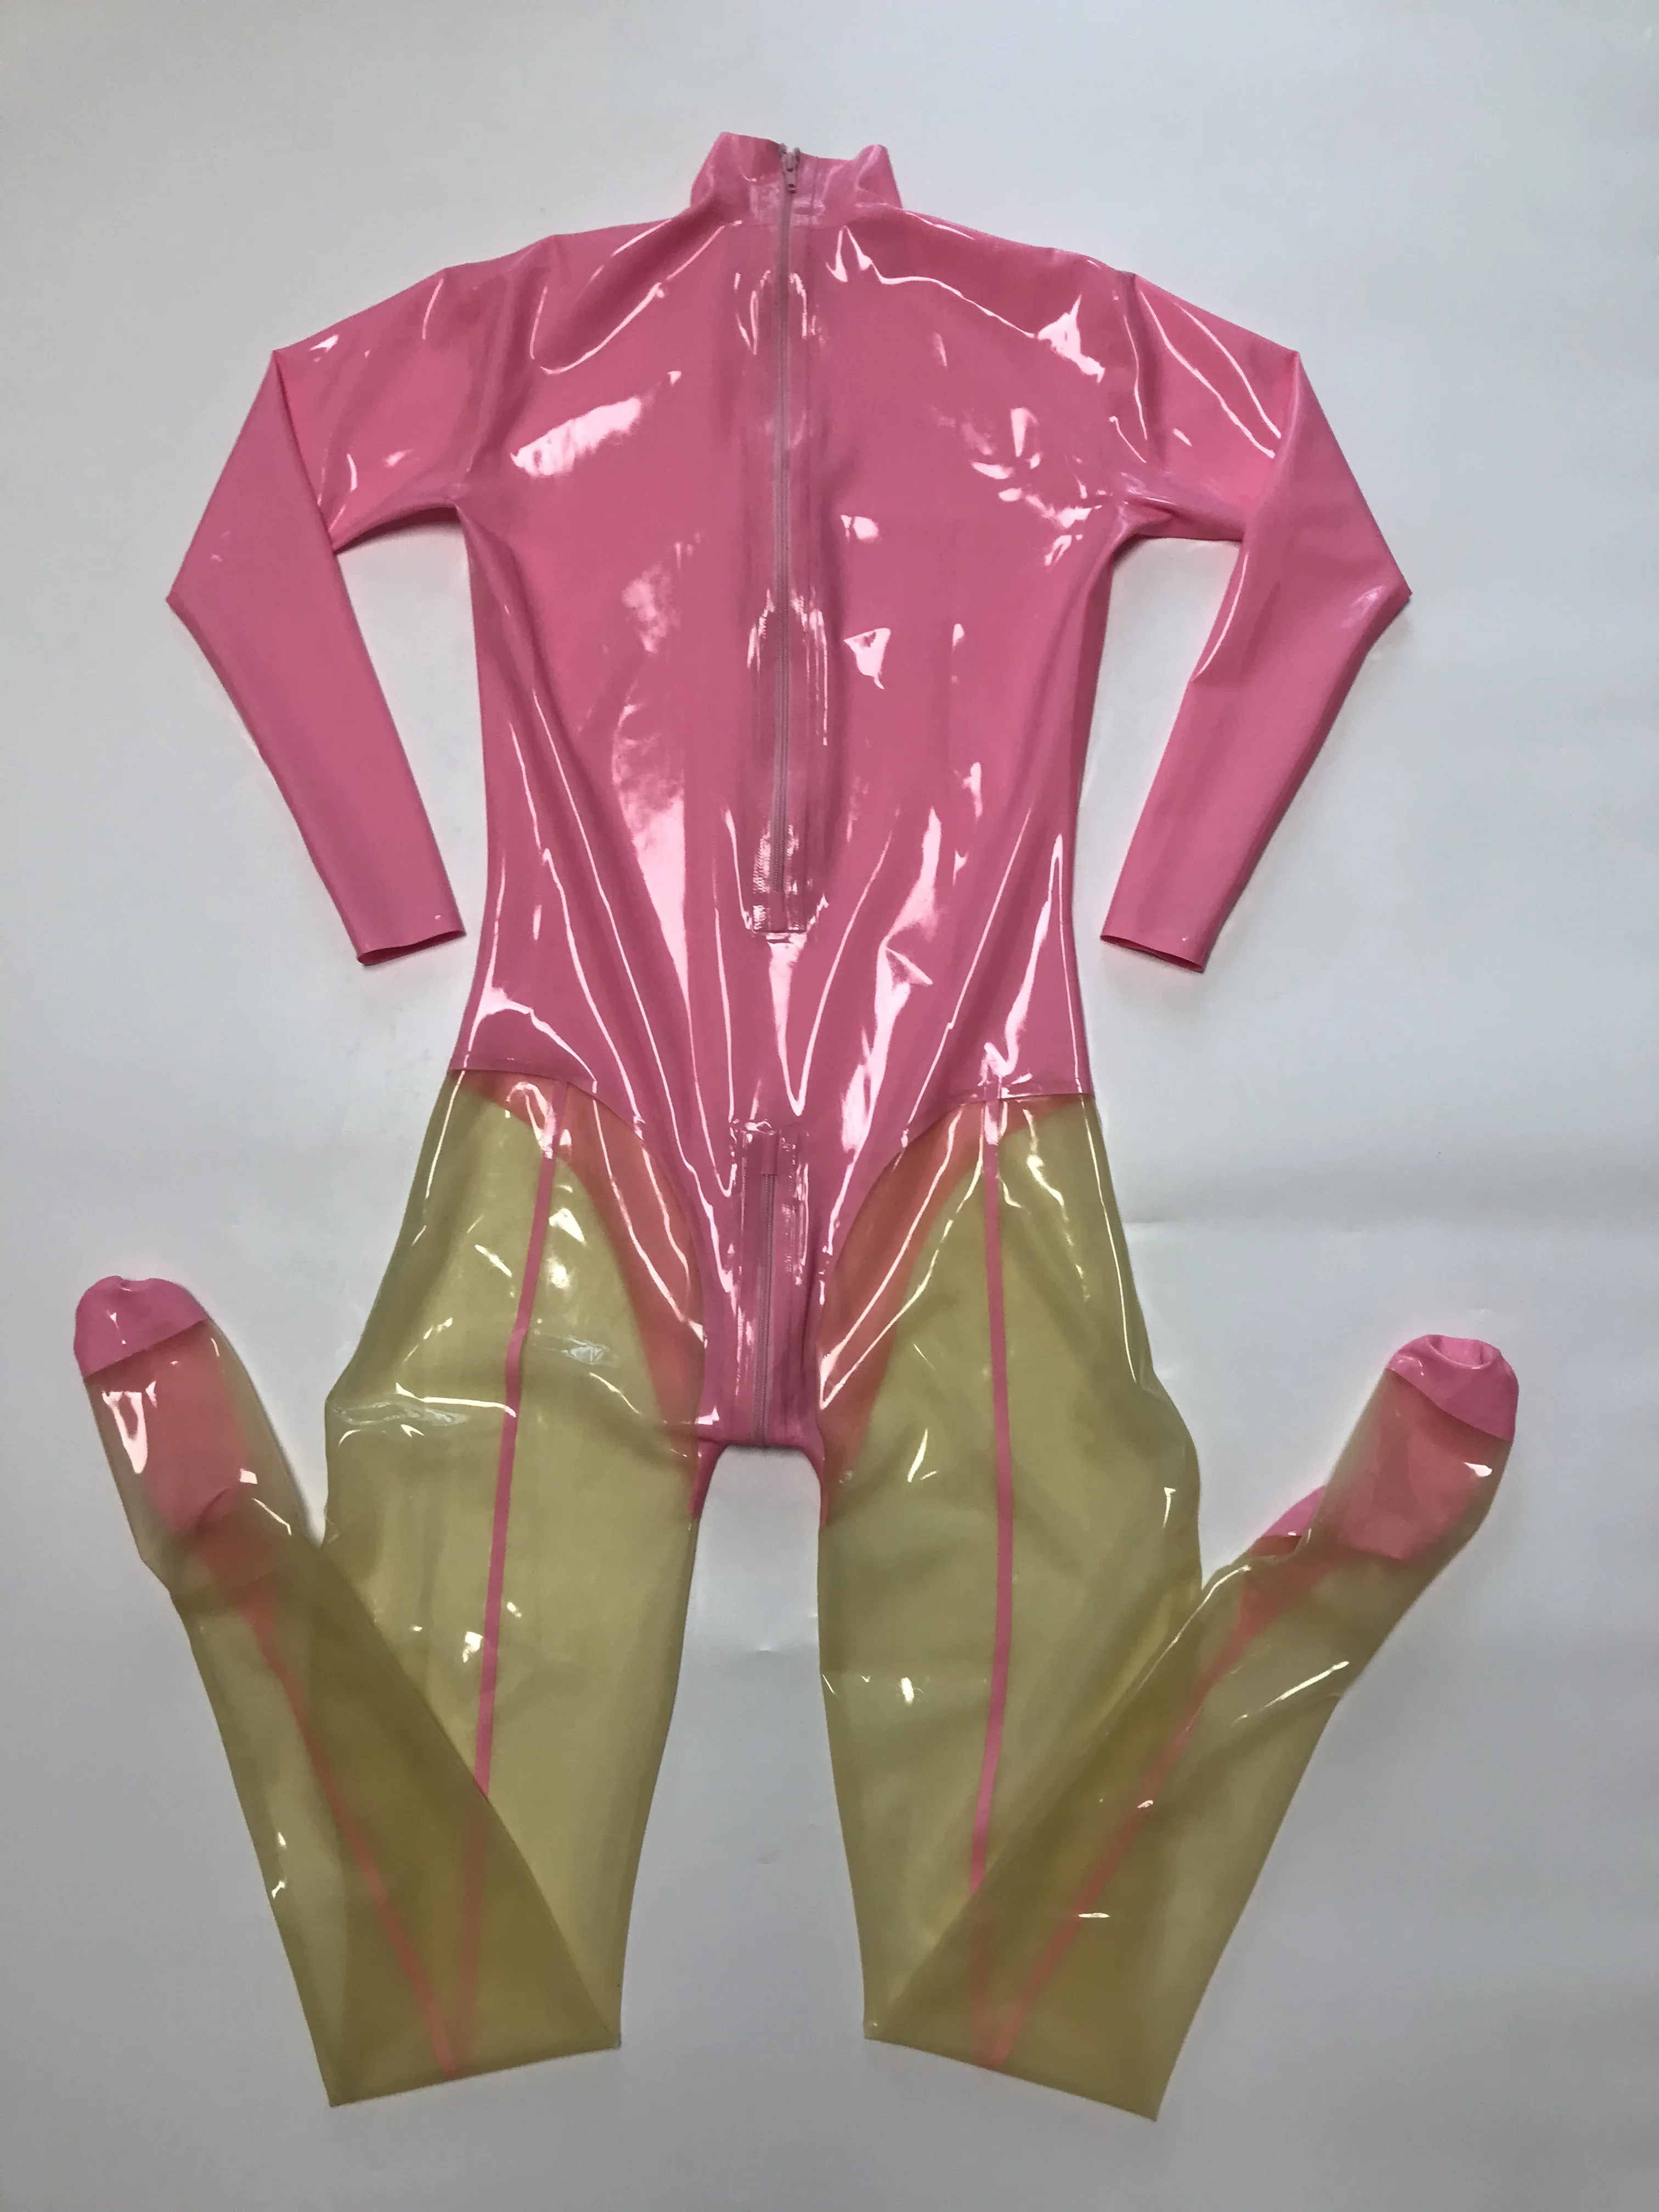 Розовый и прозрачный латексный облегающий комбинезон, резиновое боди, комбинезон с застежкой сзади на молнию в промежности Изображение 2